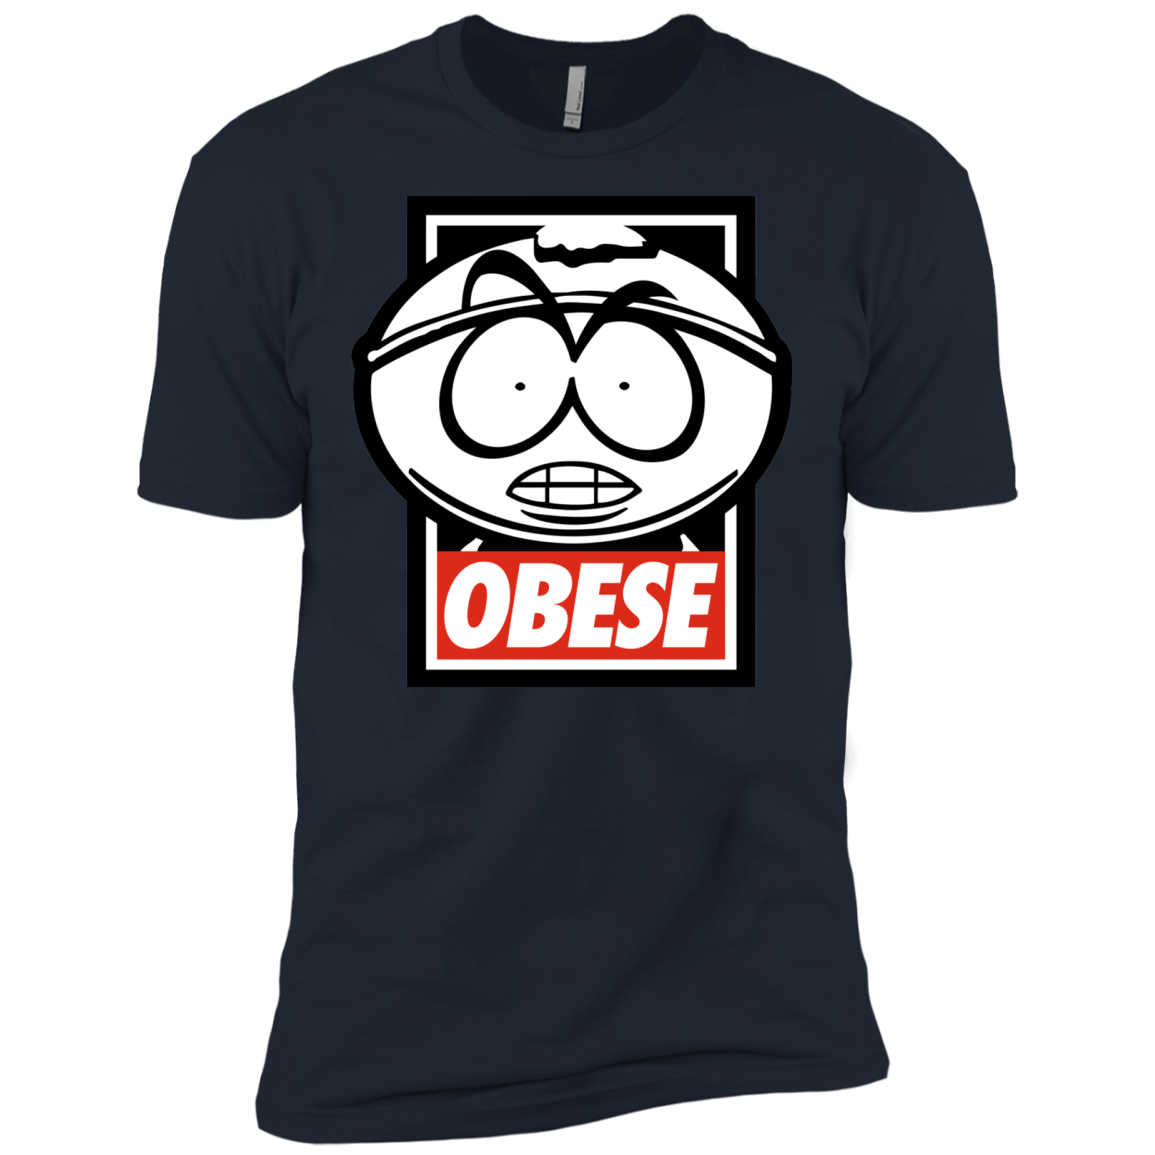 Obese Men's Premium T-Shirt